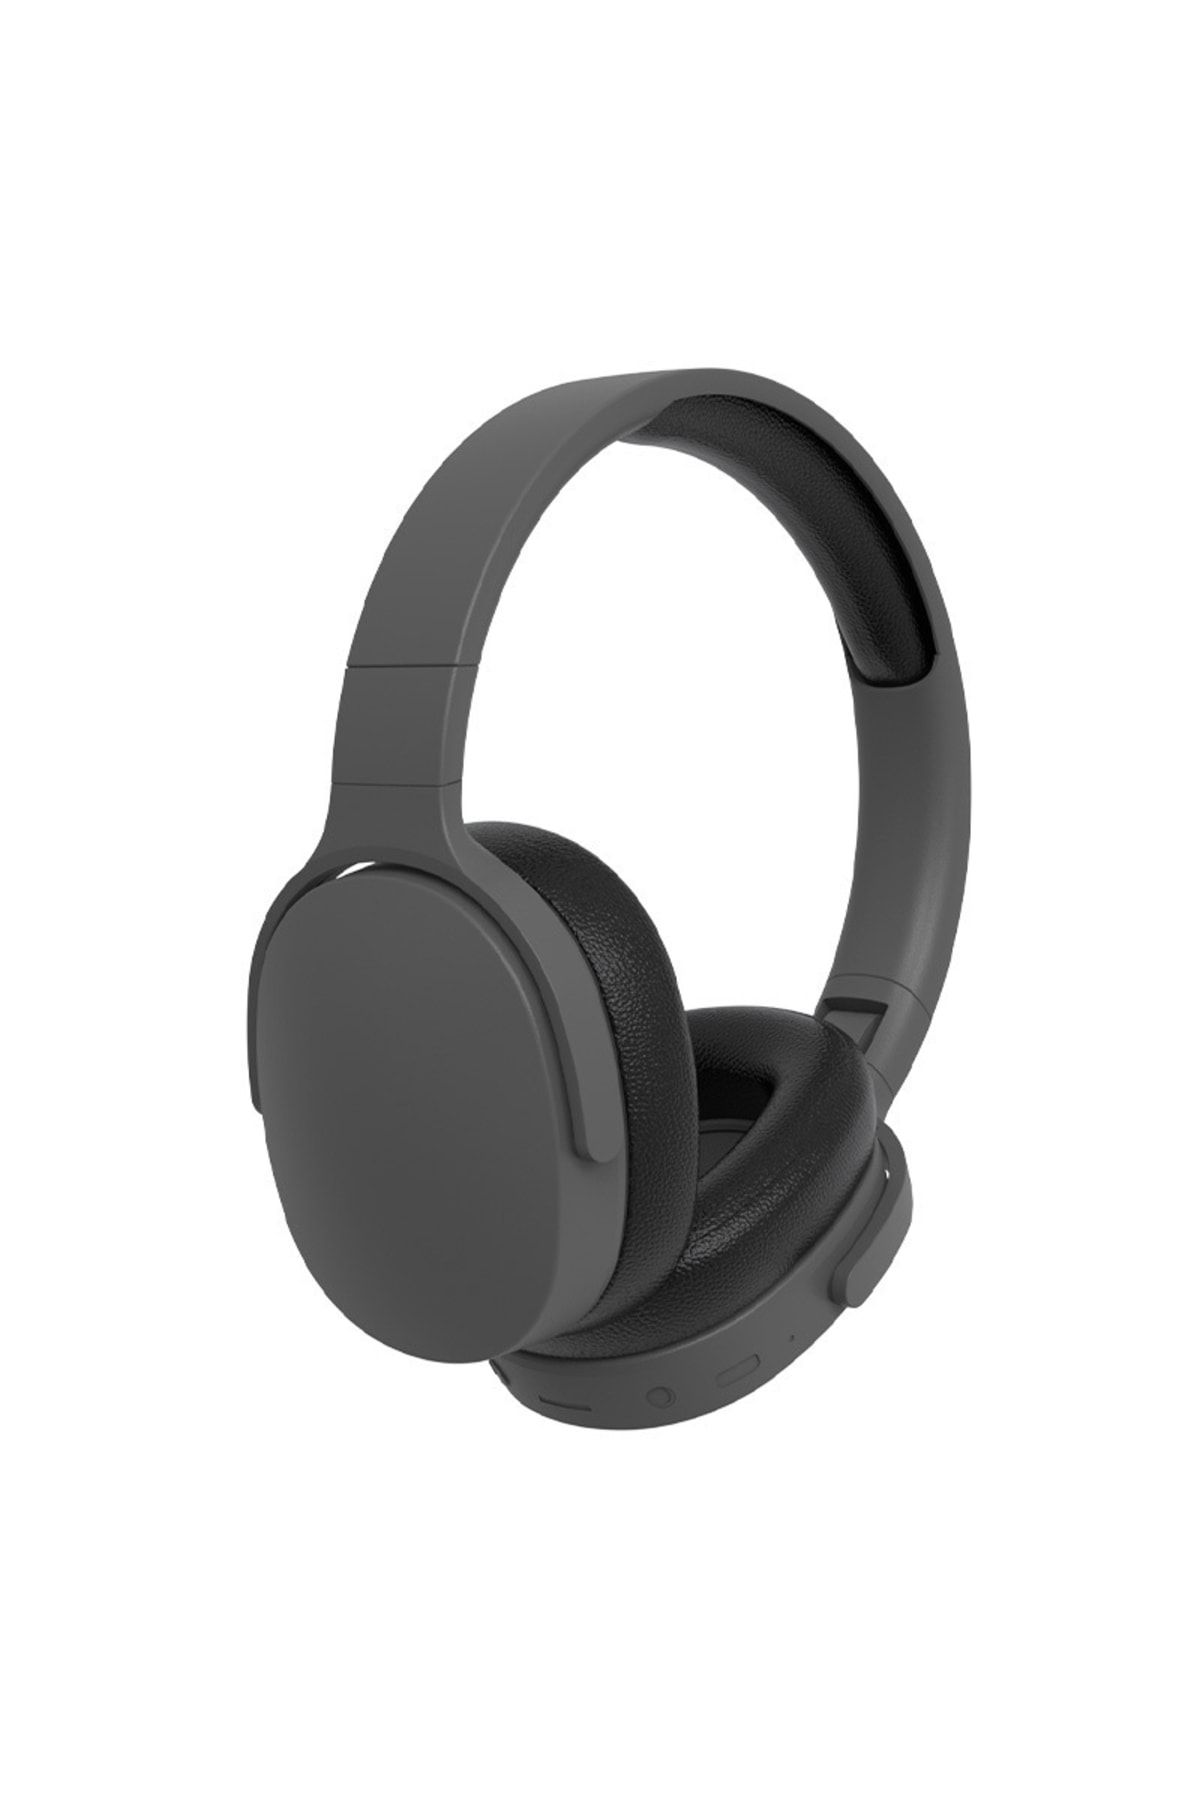 TECHNOM Yeni Nesil Şık Ergonomik Tasarım Extra Bass Kablosuz Bluetooth Mikrofonlu Spor Kulaklık